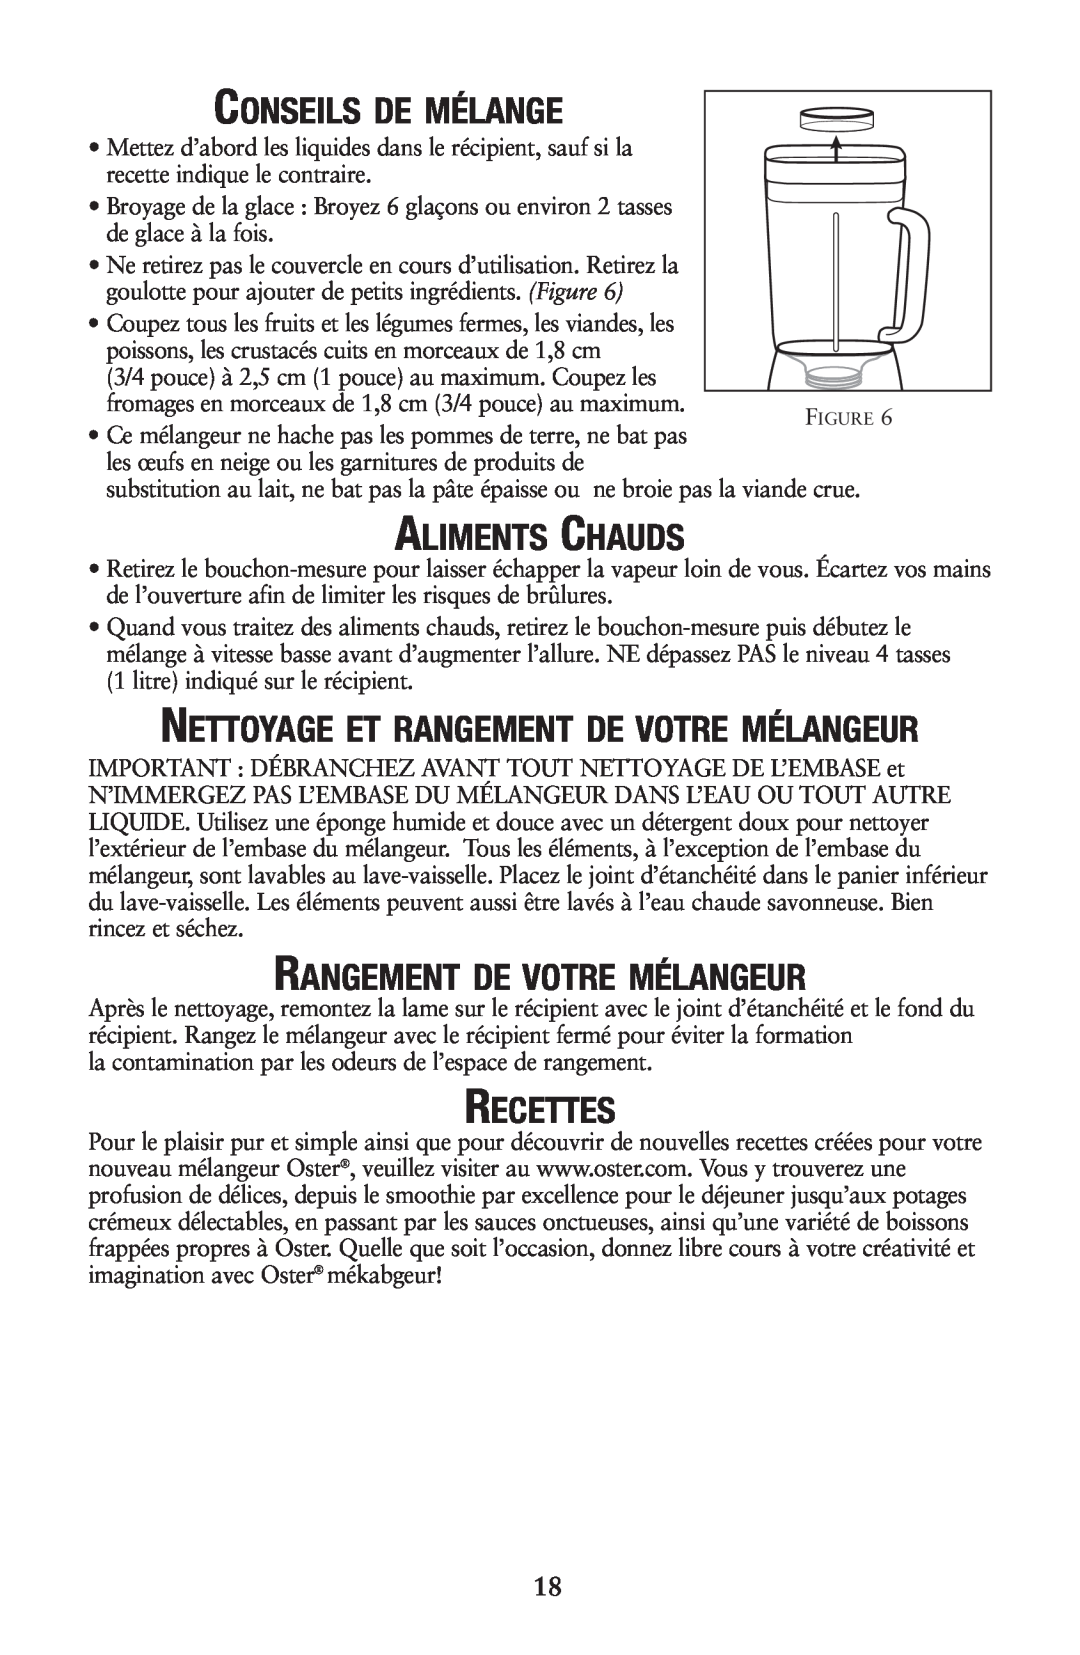 Oster 133086 user manual Conseils De Mélange, Aliments Chauds, Rangement De Votre Mélangeur, Recettes 